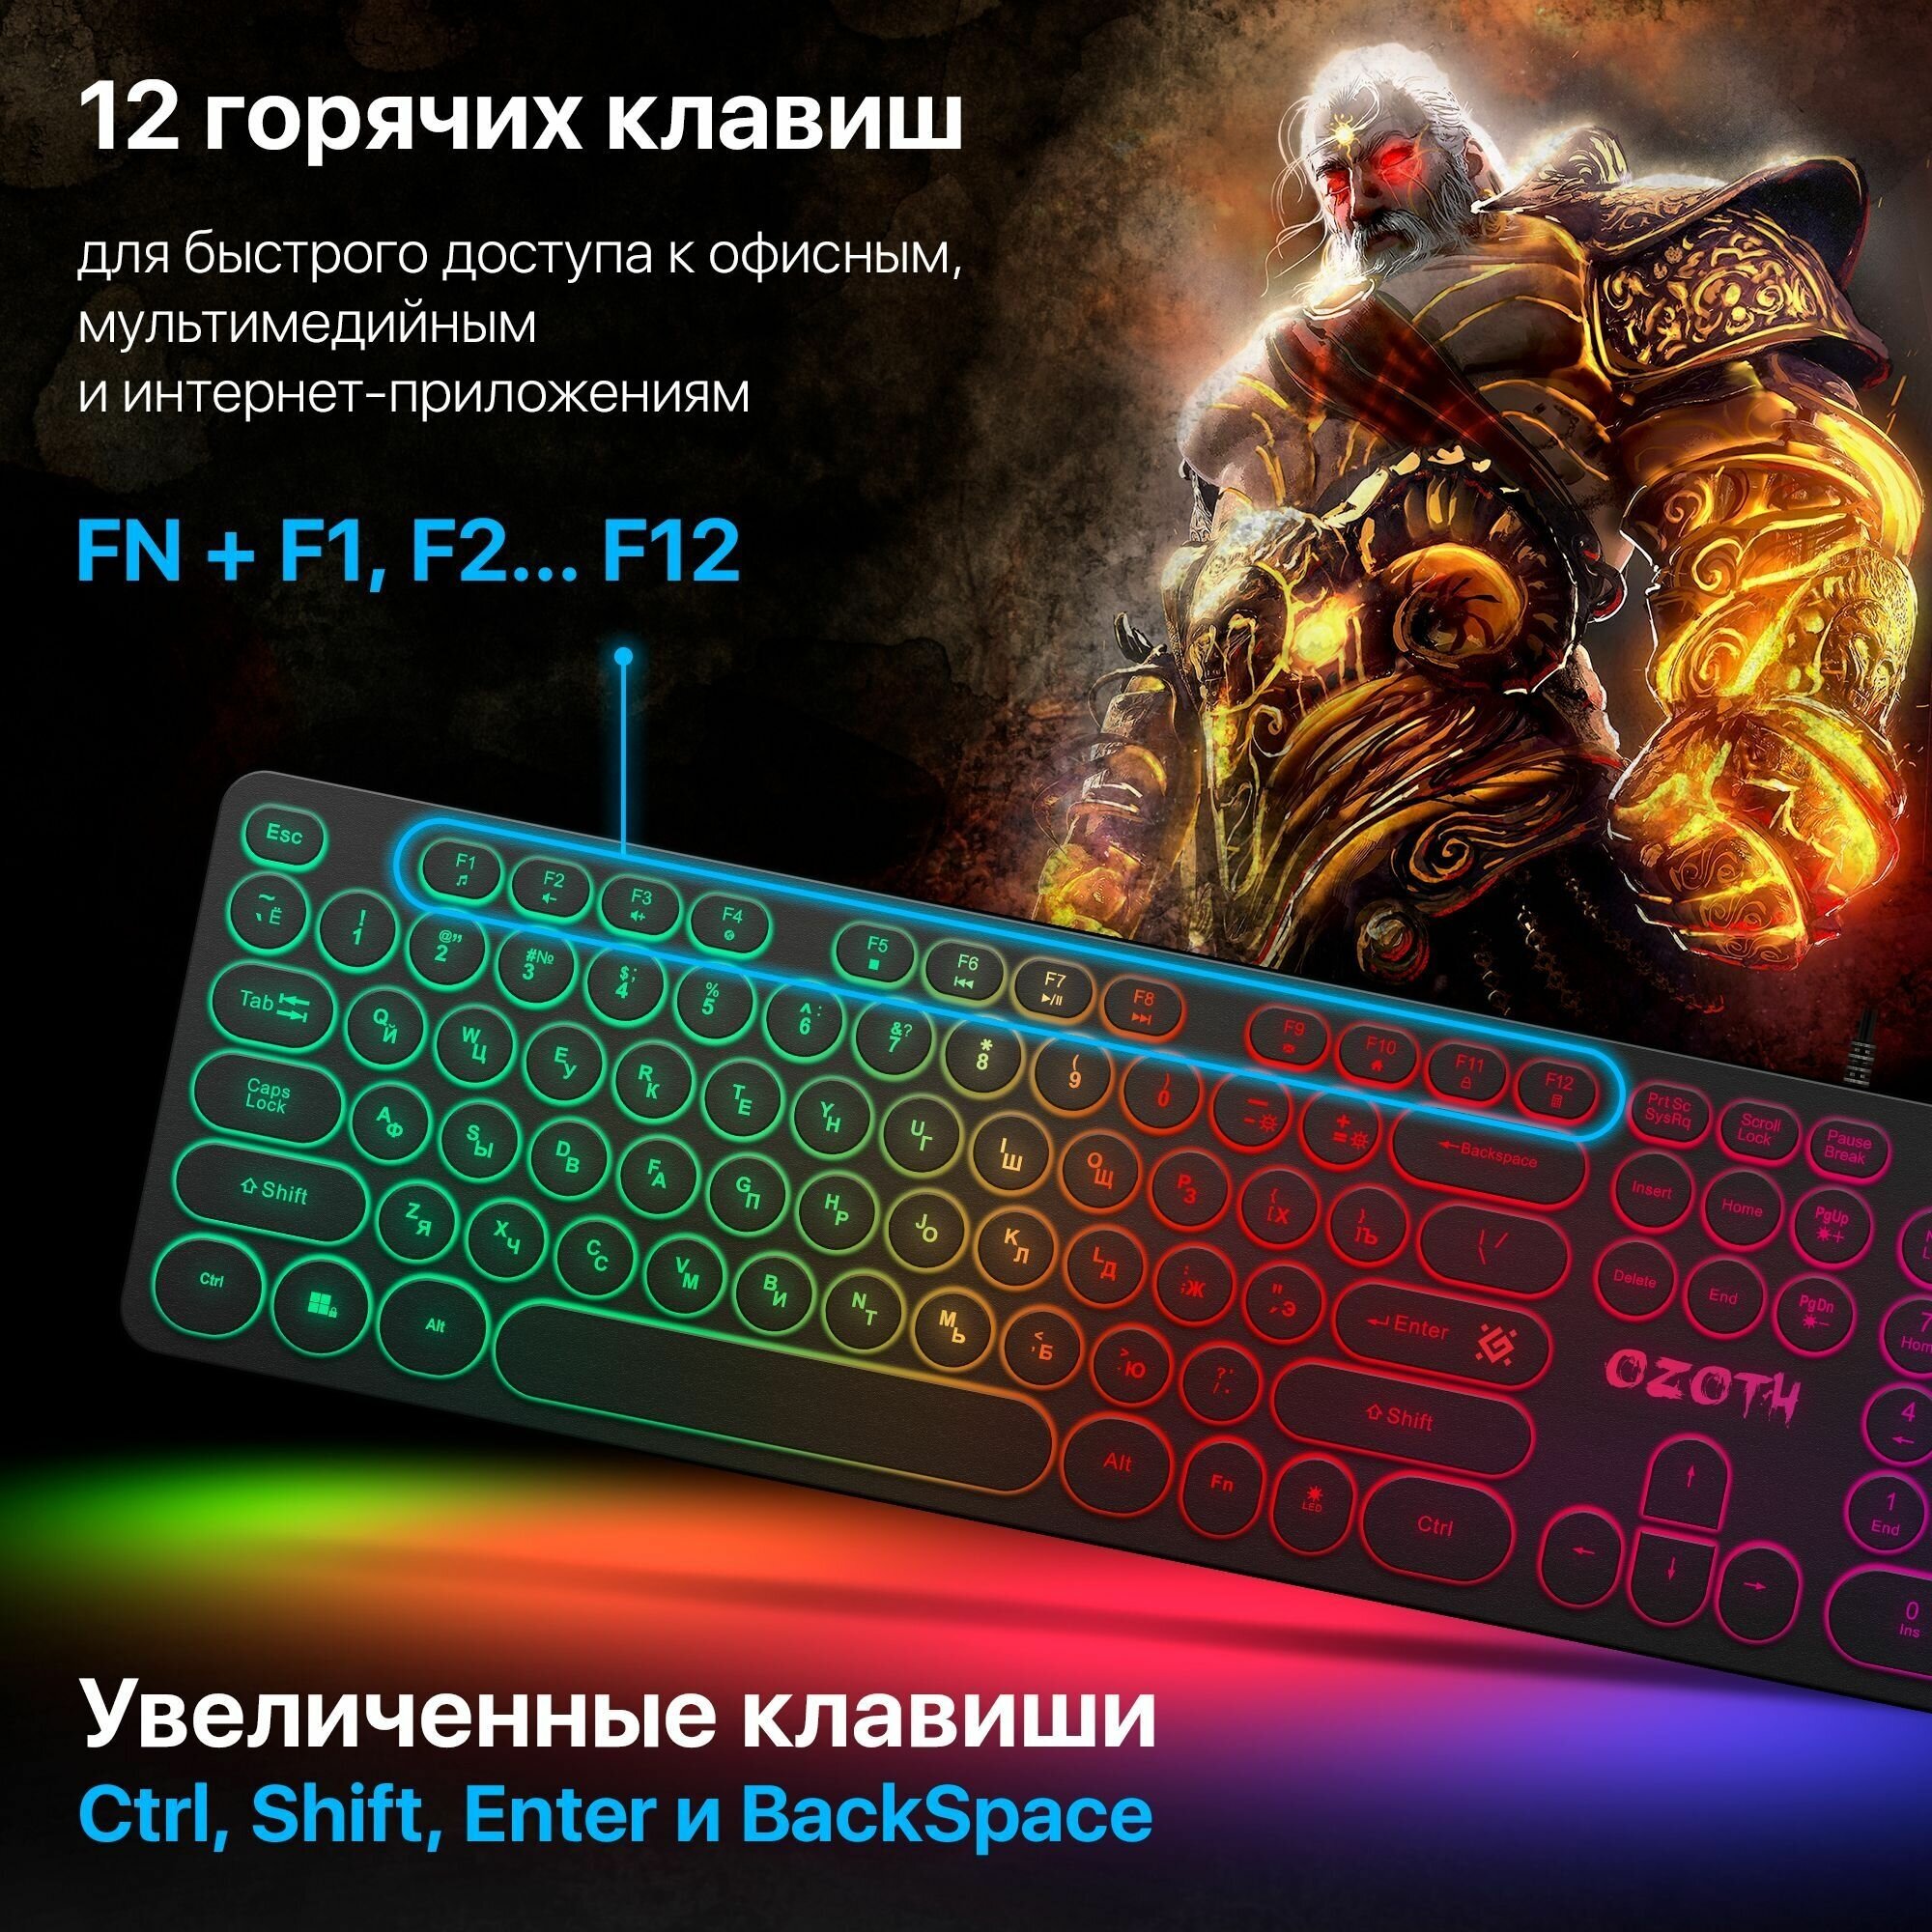 Игровая клавиатура для компьютера Defender Ozoth мембранная (Full-size)